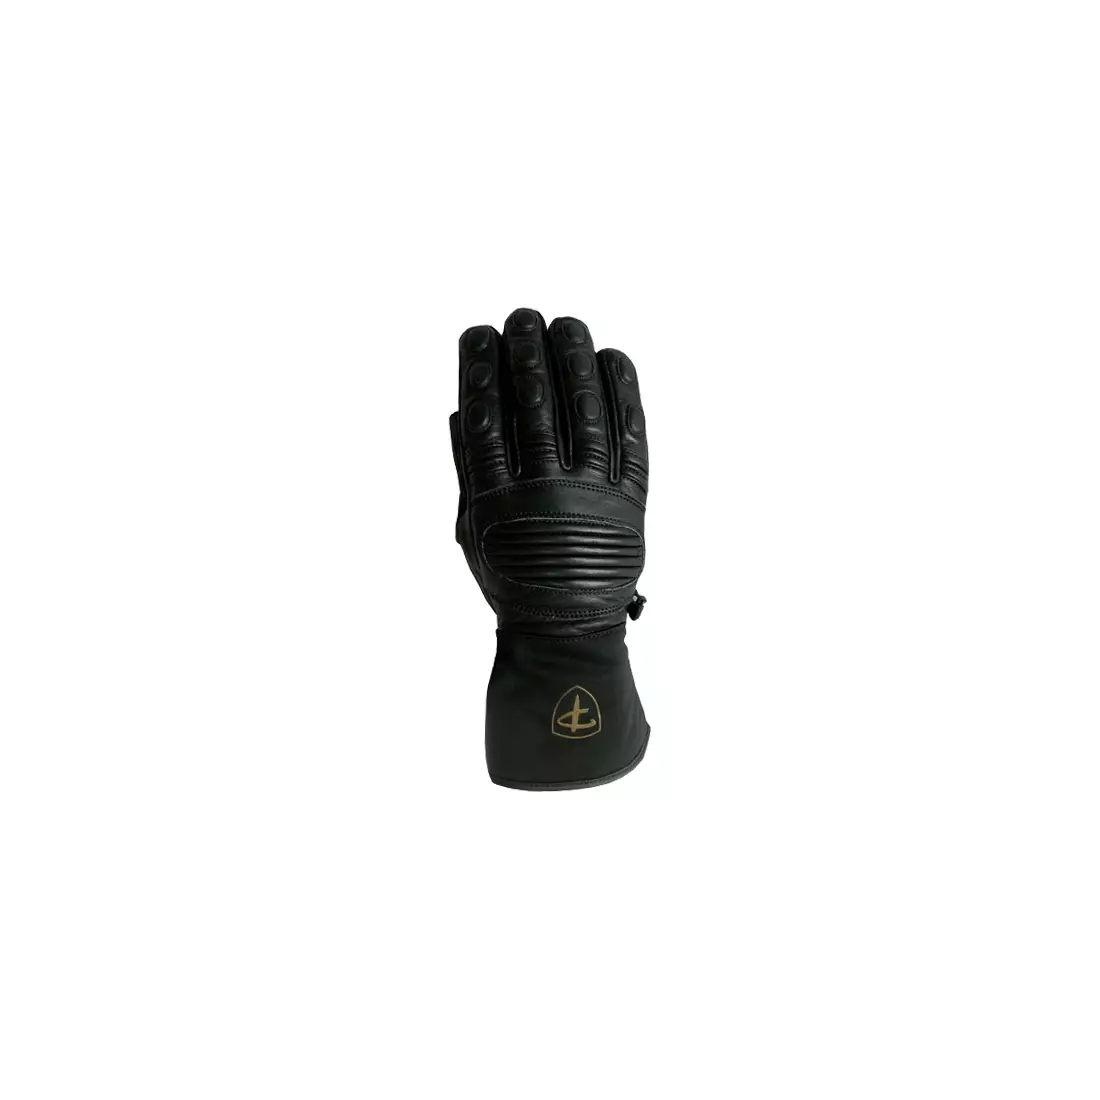 Polednik pánské zimní rukavice, SKI PRO 3M, Černá